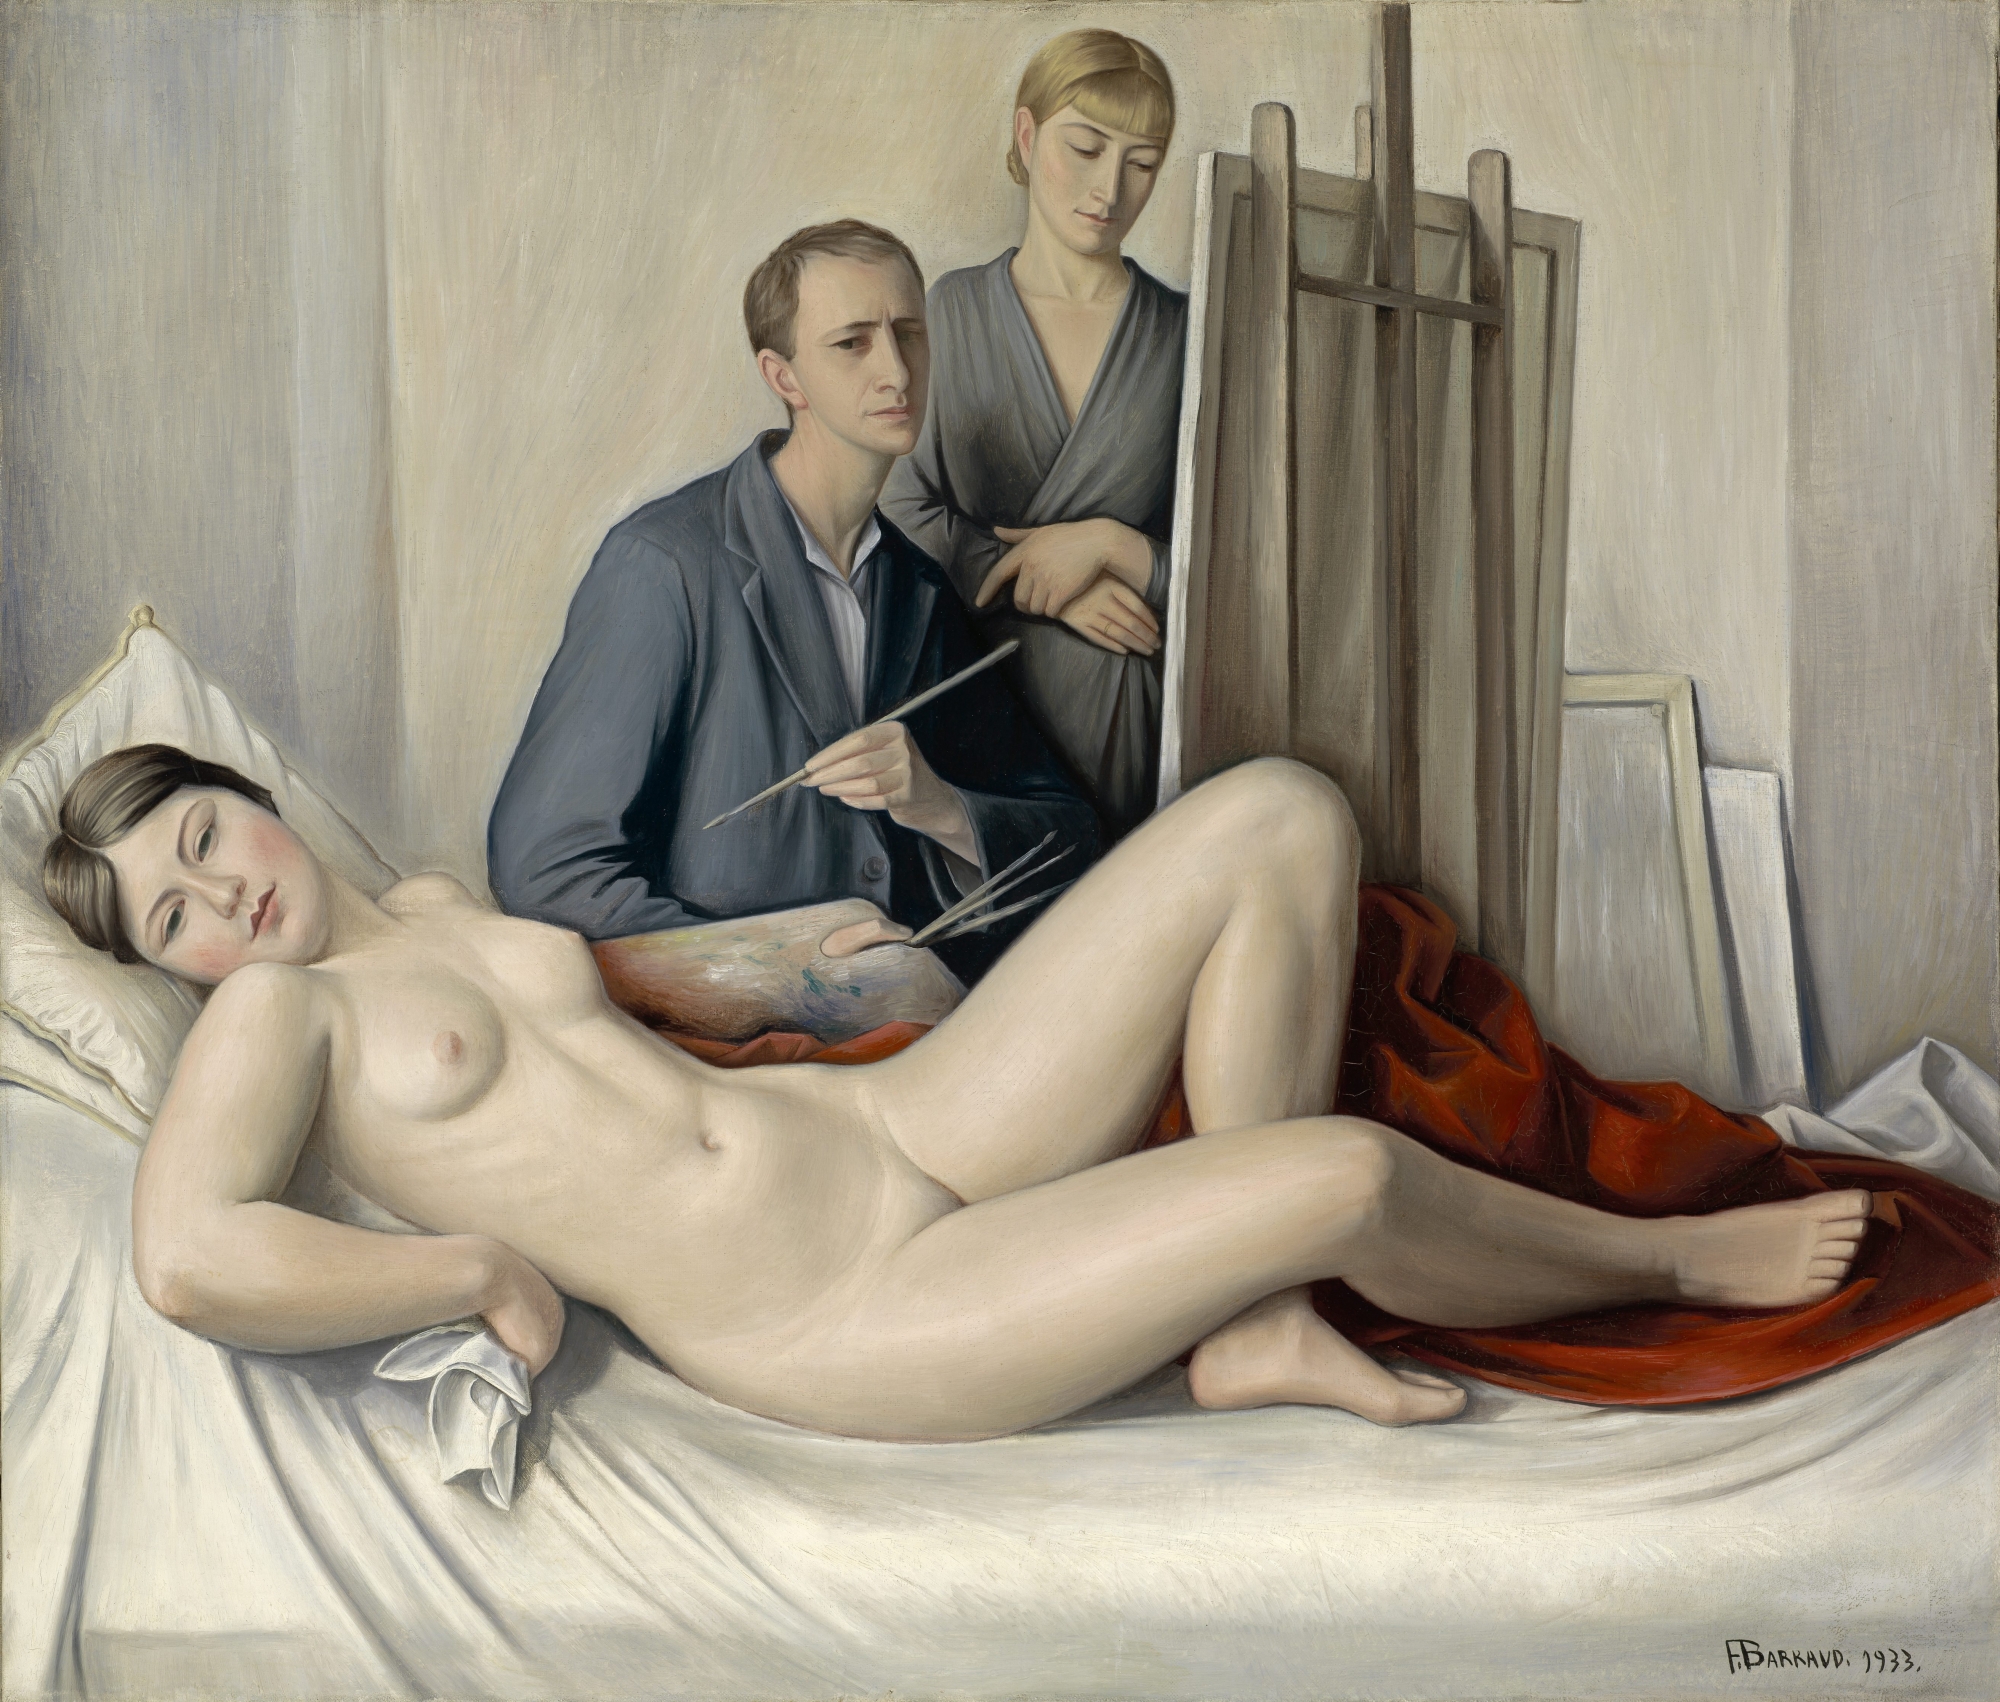 François Barraud, "La séance de peinture", 1933